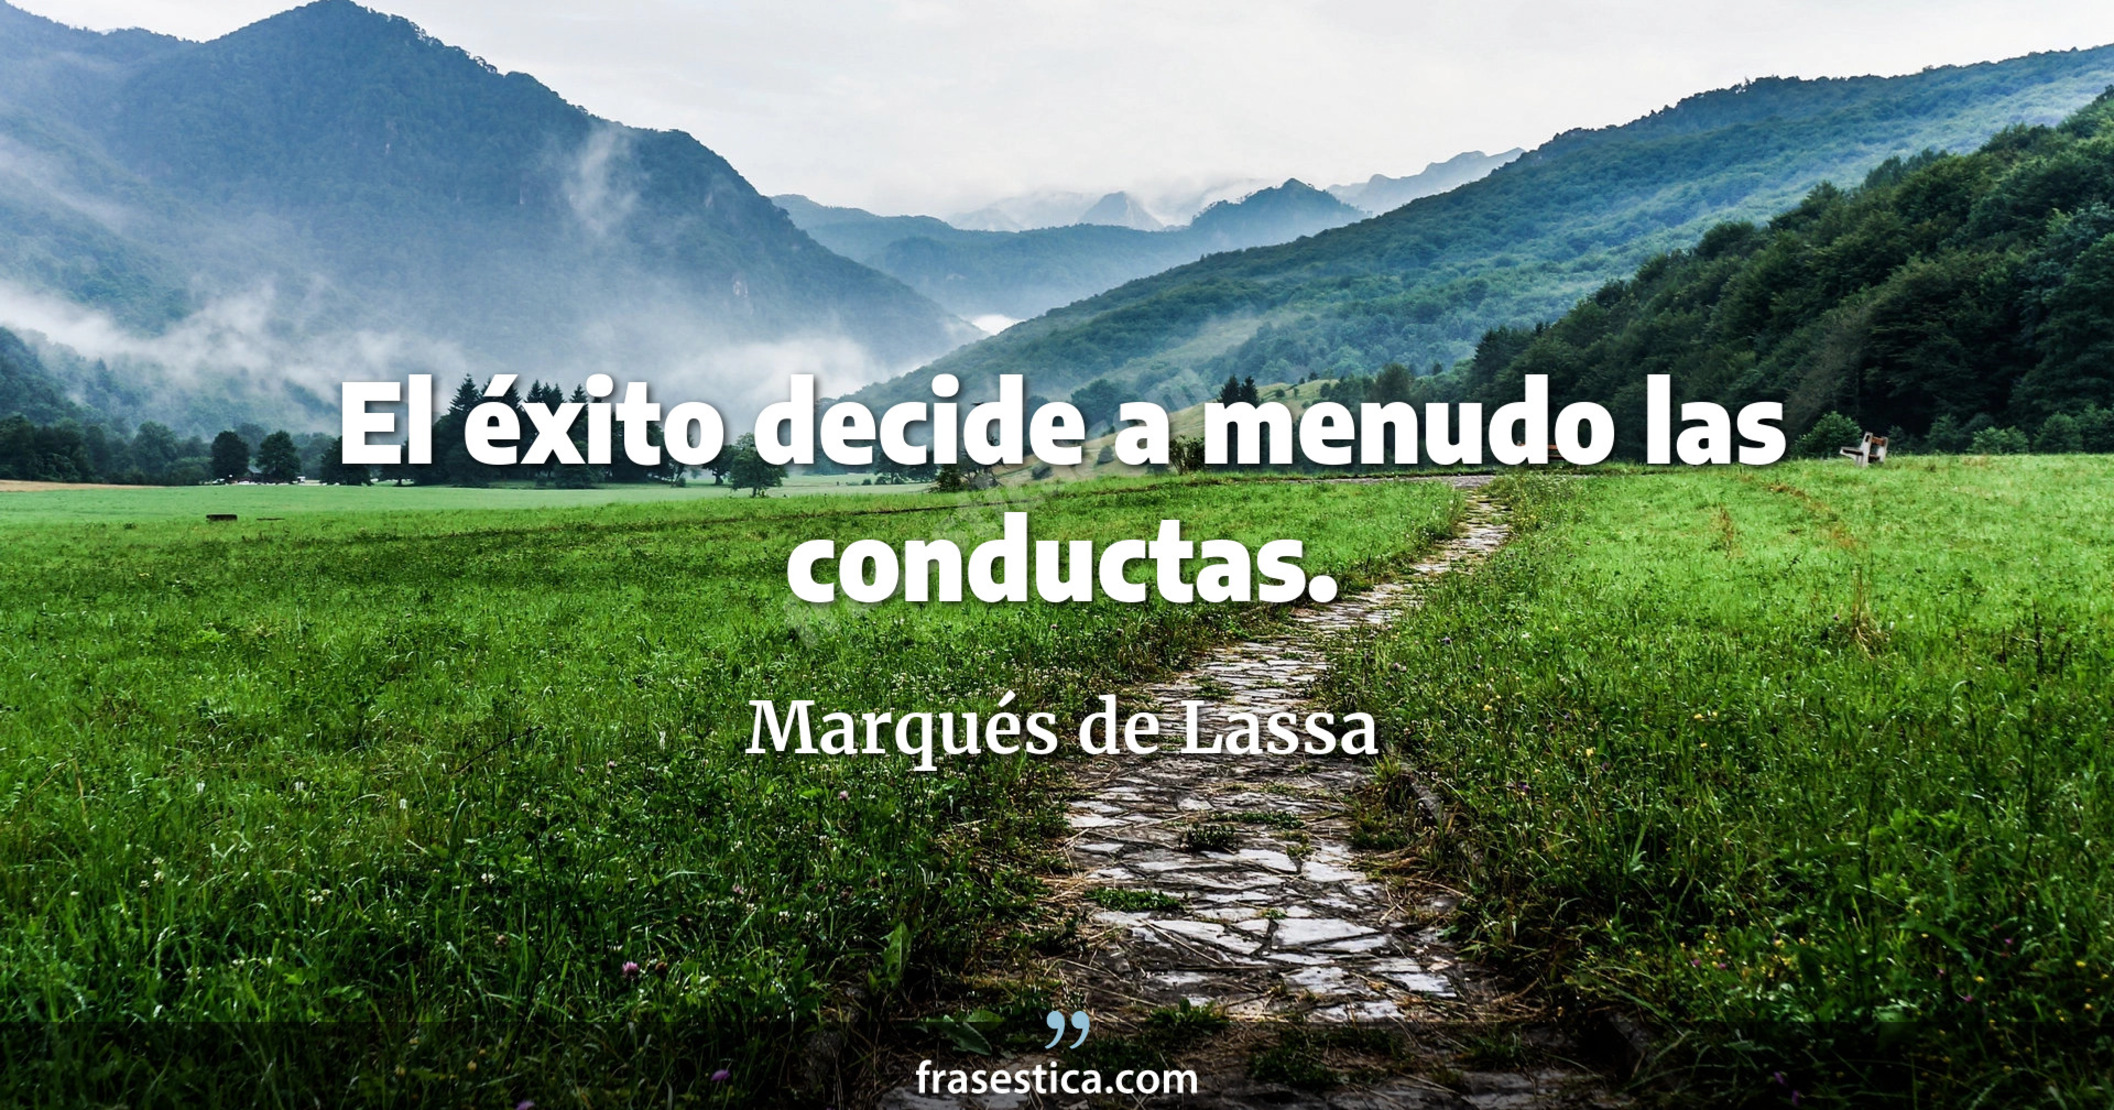 El éxito decide a menudo las conductas. - Marqués de Lassa